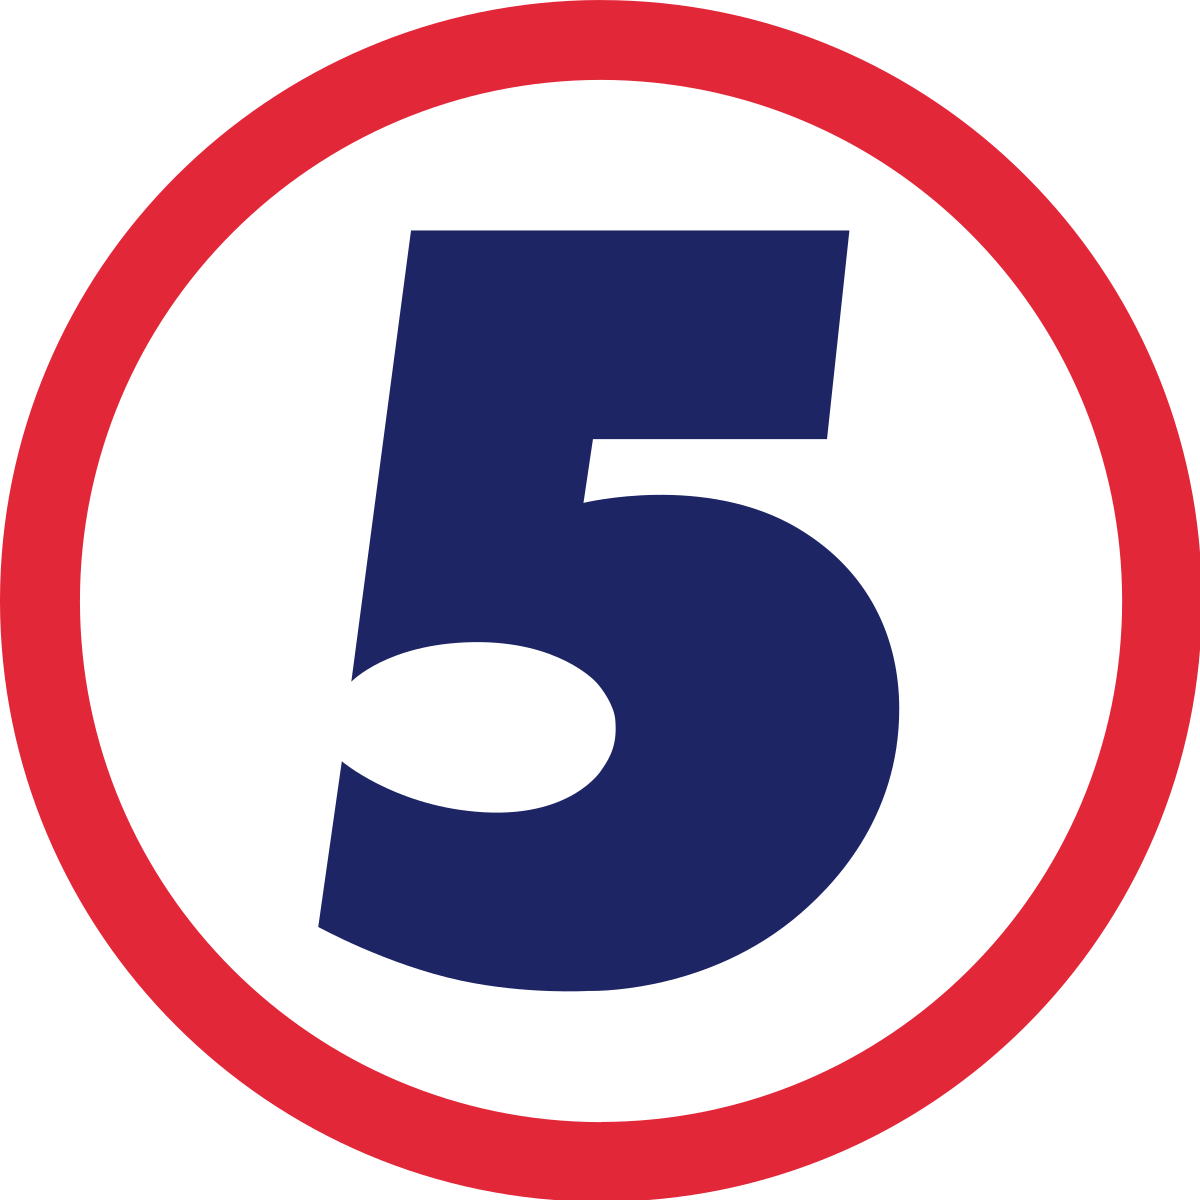 Kanal 5